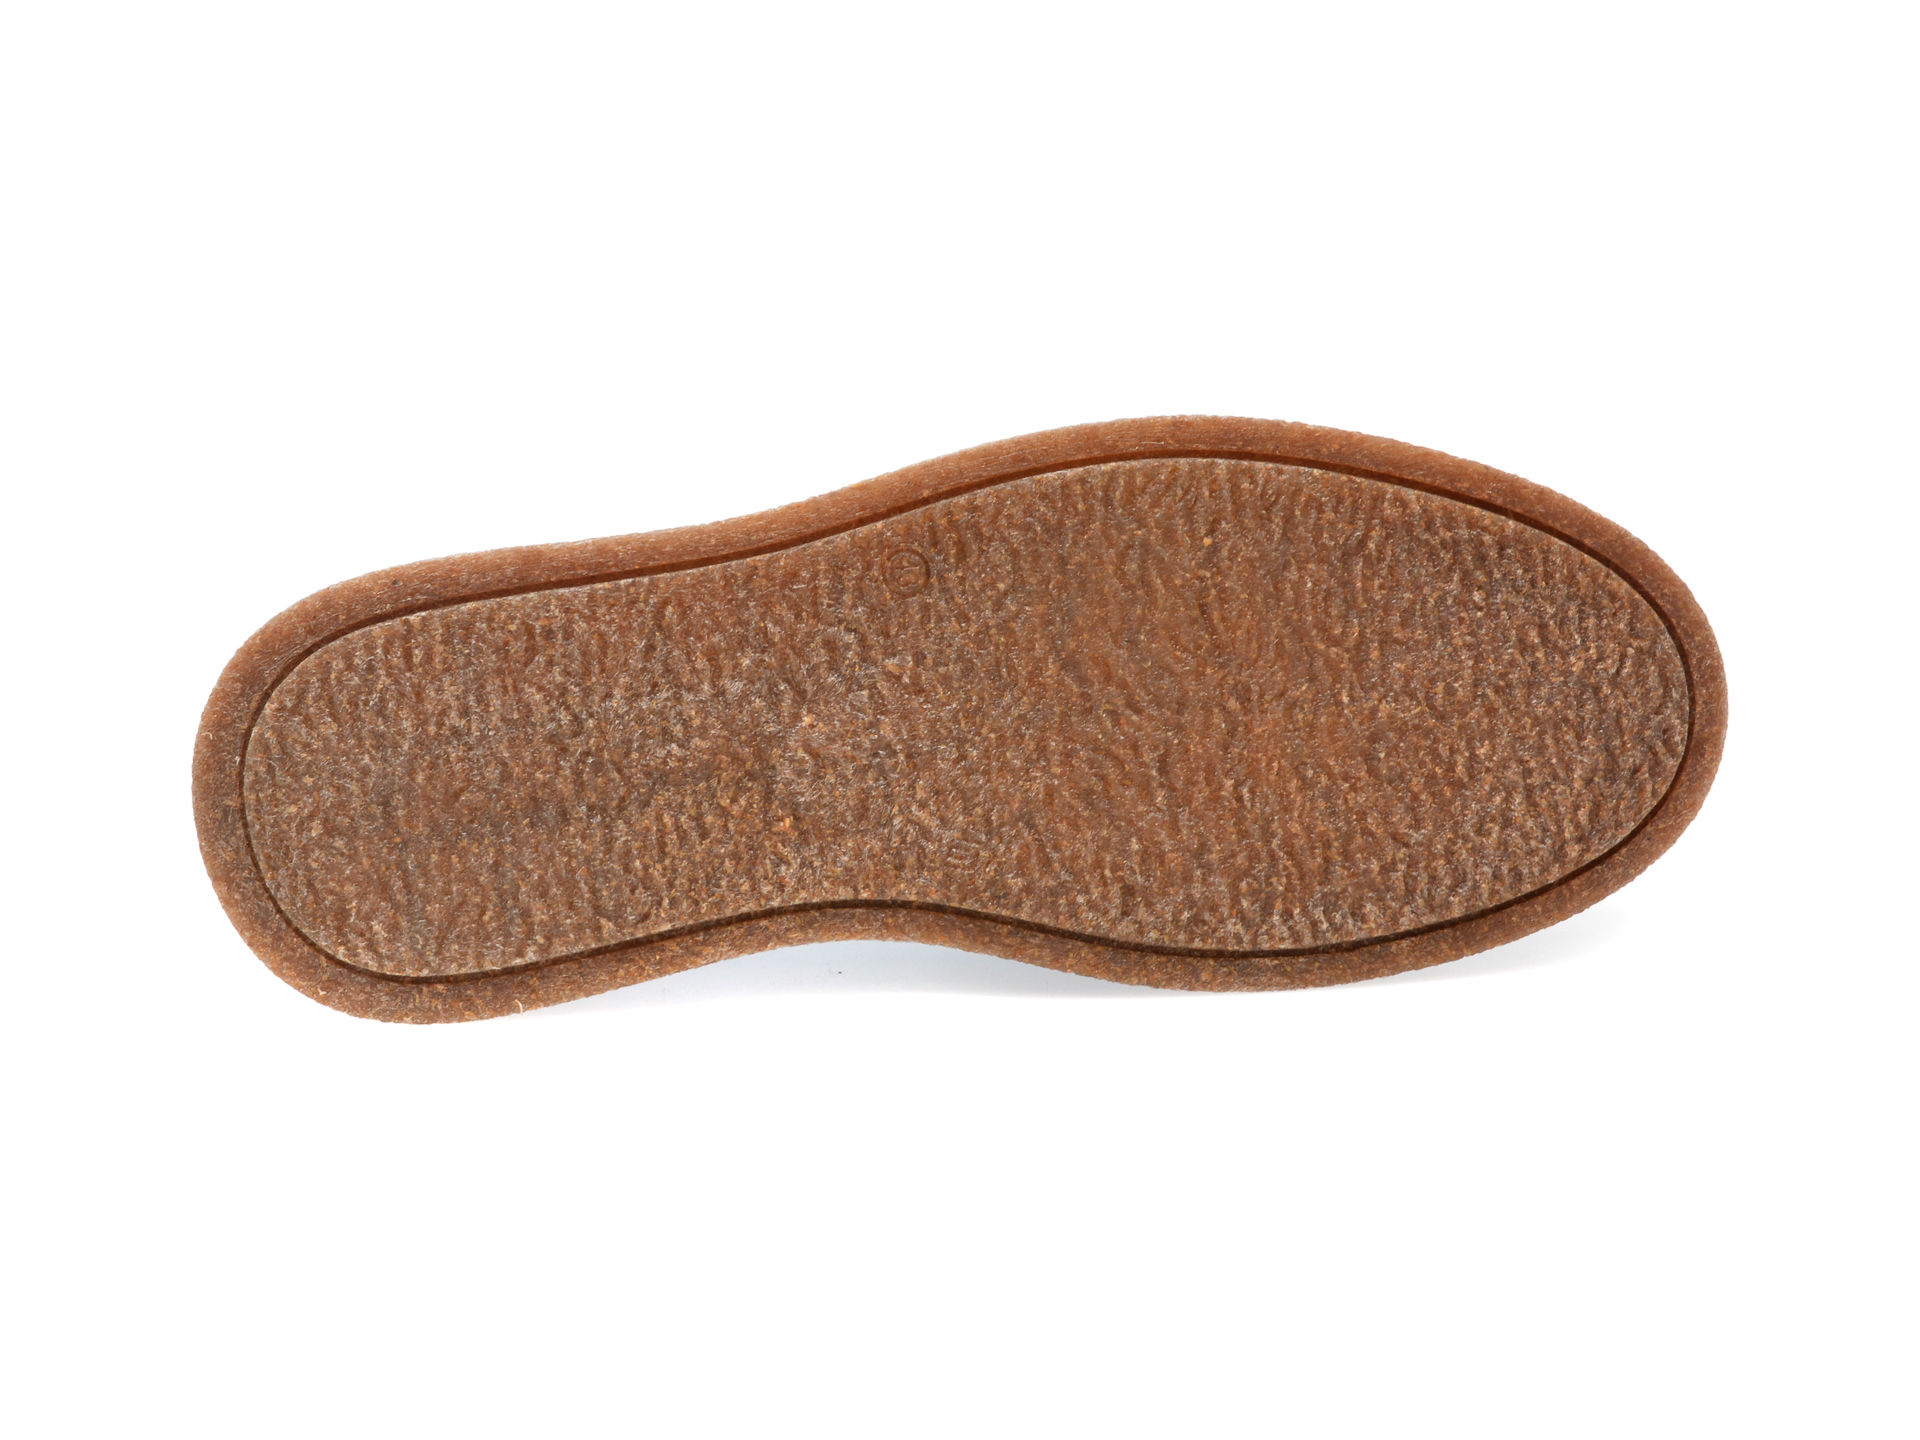 Pantofi AXXELLL negri, AYK001, din piele naturala